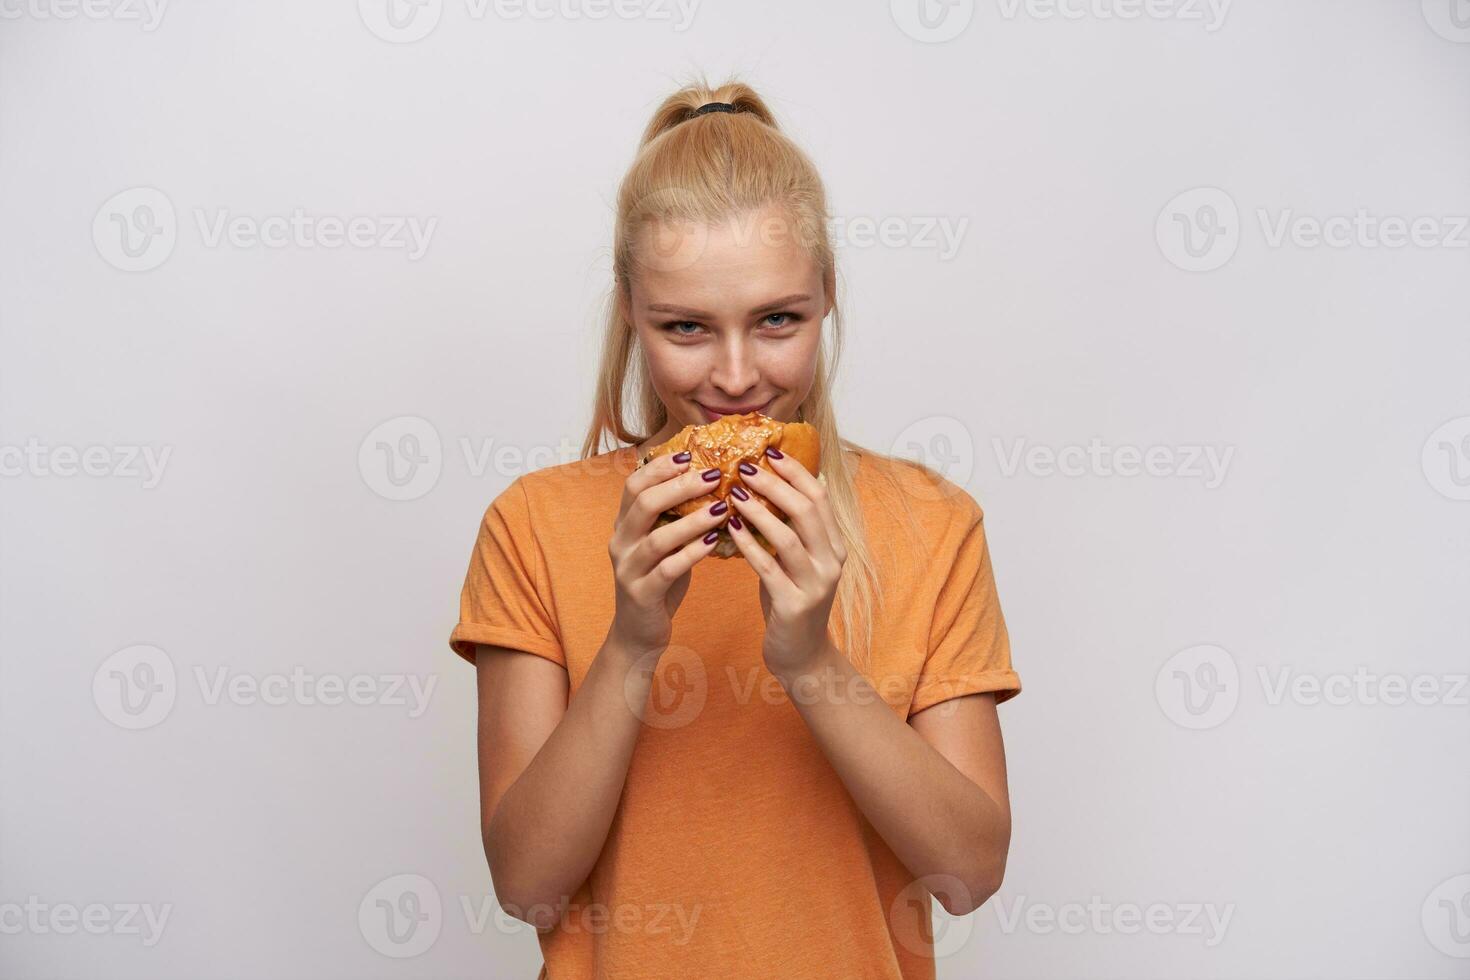 nöjd ung attraktiv blond kvinna med hästsvans förtjusande färsk burger och ser glatt på kamera, bär orange t-shirt medan stående mot vit bakgrund foto